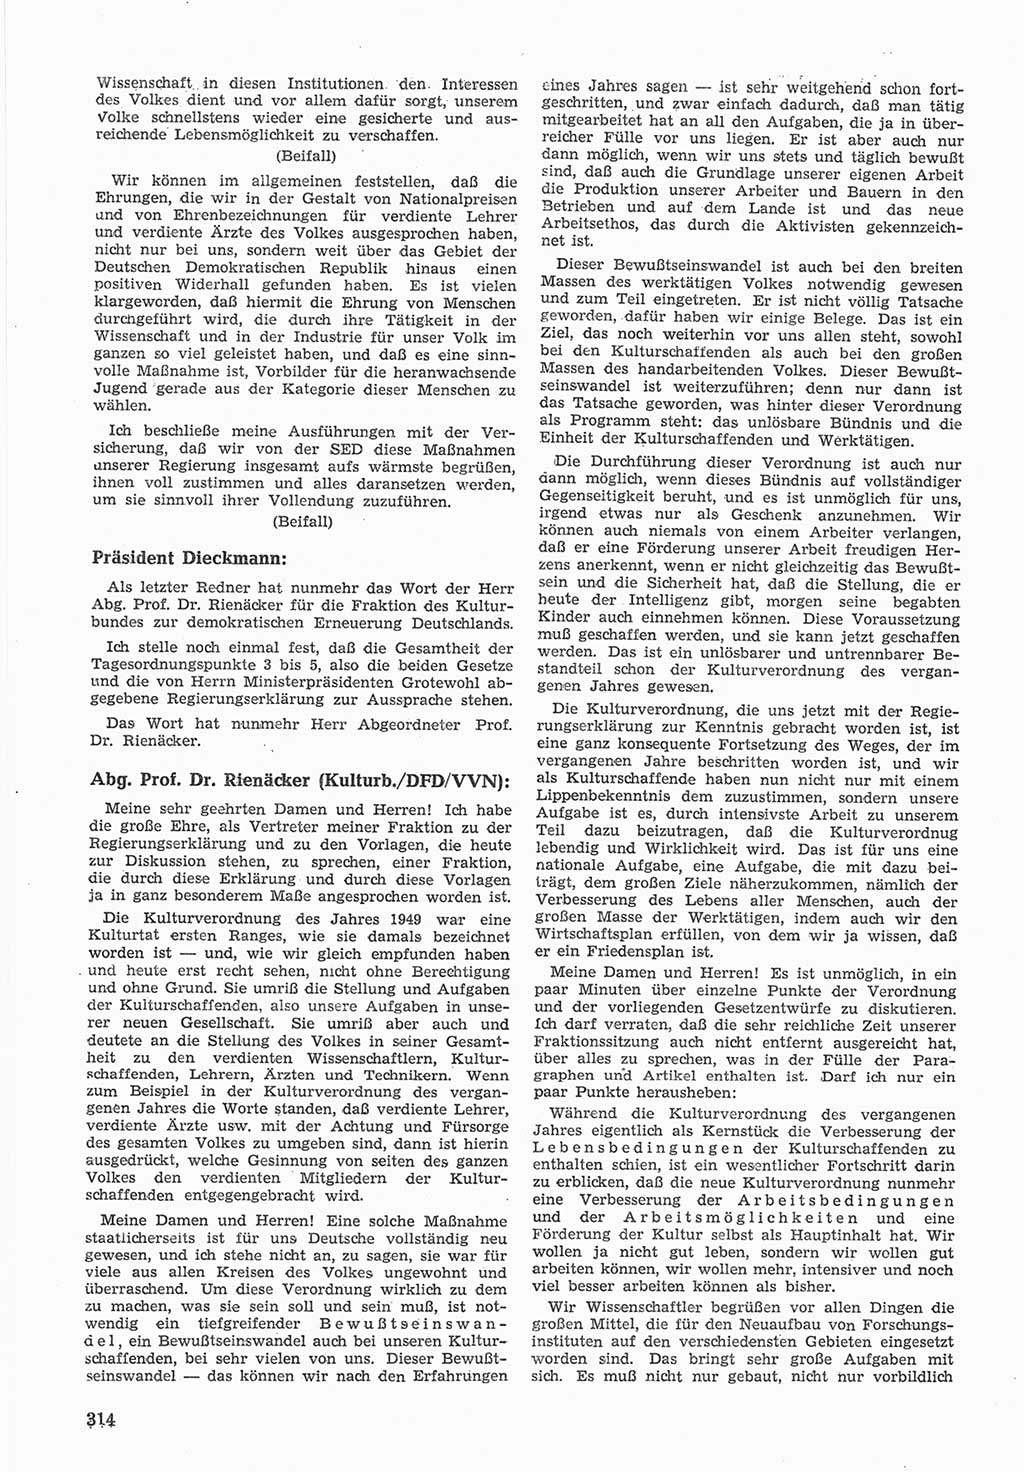 Provisorische Volkskammer (VK) der Deutschen Demokratischen Republik (DDR) 1949-1950, Dokument 328 (Prov. VK DDR 1949-1950, Dok. 328)